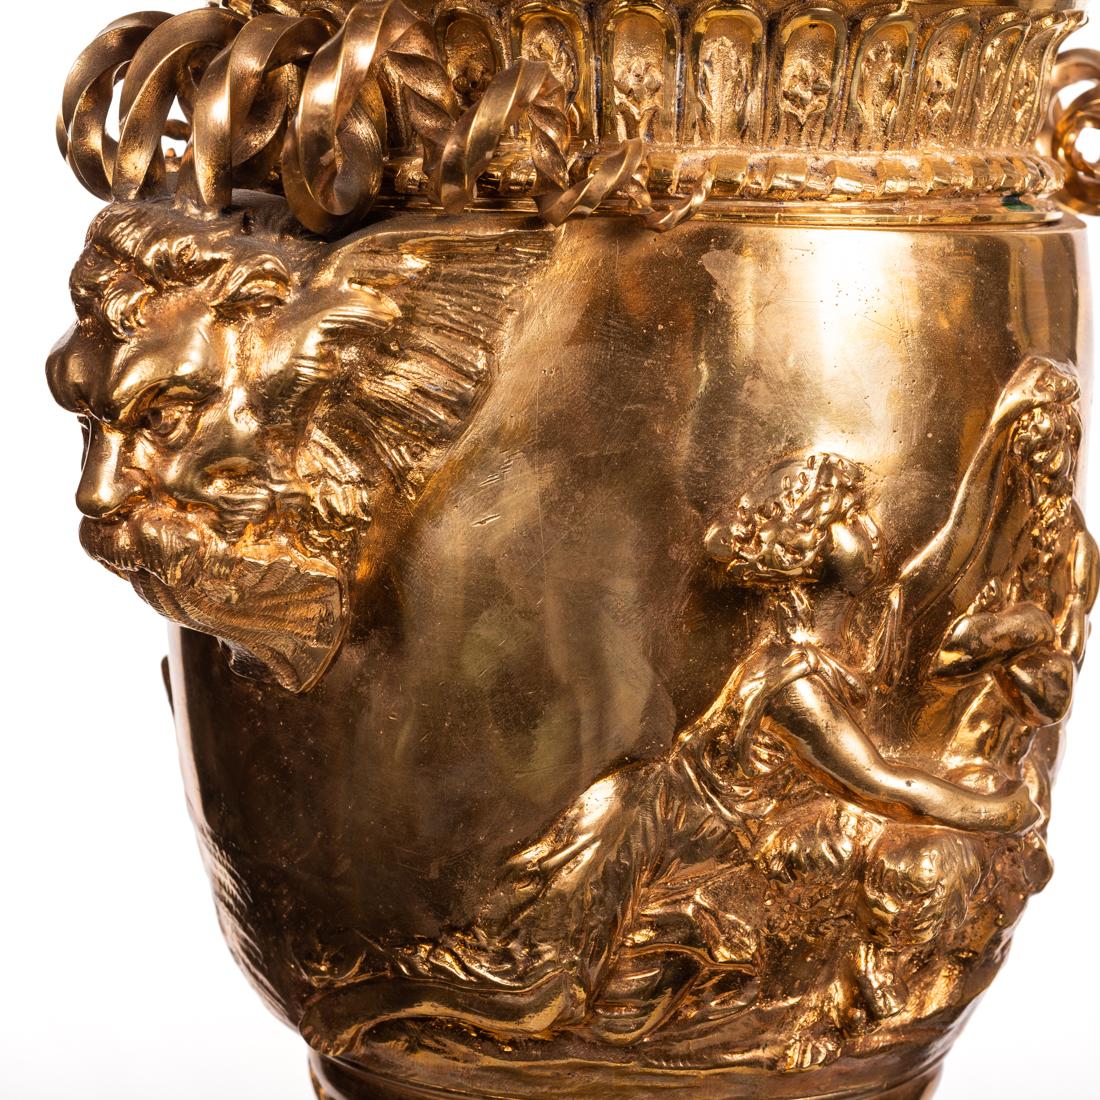 Une lampe de table en forme d'urne en bronze doré,
d'après l'antique, une lampe de table en forme d'urne en bronze doré. 
Mesures : Hauteur 31 in. (78,74 cm.) (hors tout) 
Largeur 8 in. (20.32 cm.) 
Profondeur 7 in. (17.78 cm.)
 